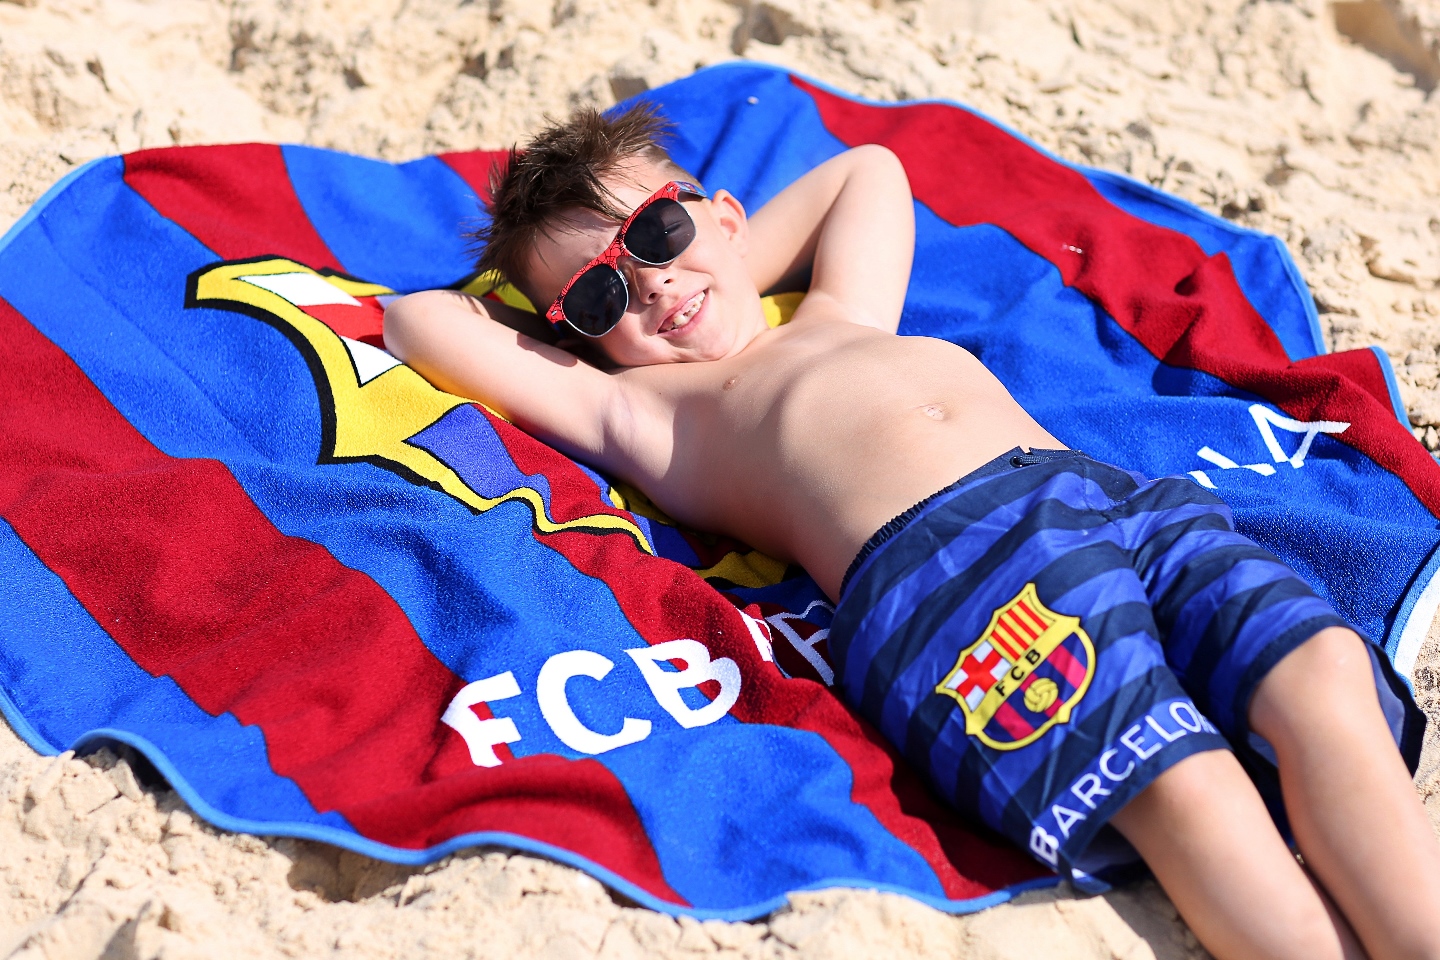 ילד שוכב בחוף ים על חול ומגבת של קבוצת כדורגל בקצלונה צבעים כחול ובורדו הילד לובש מכנס גלישה של ברצלונה בצבע כחול